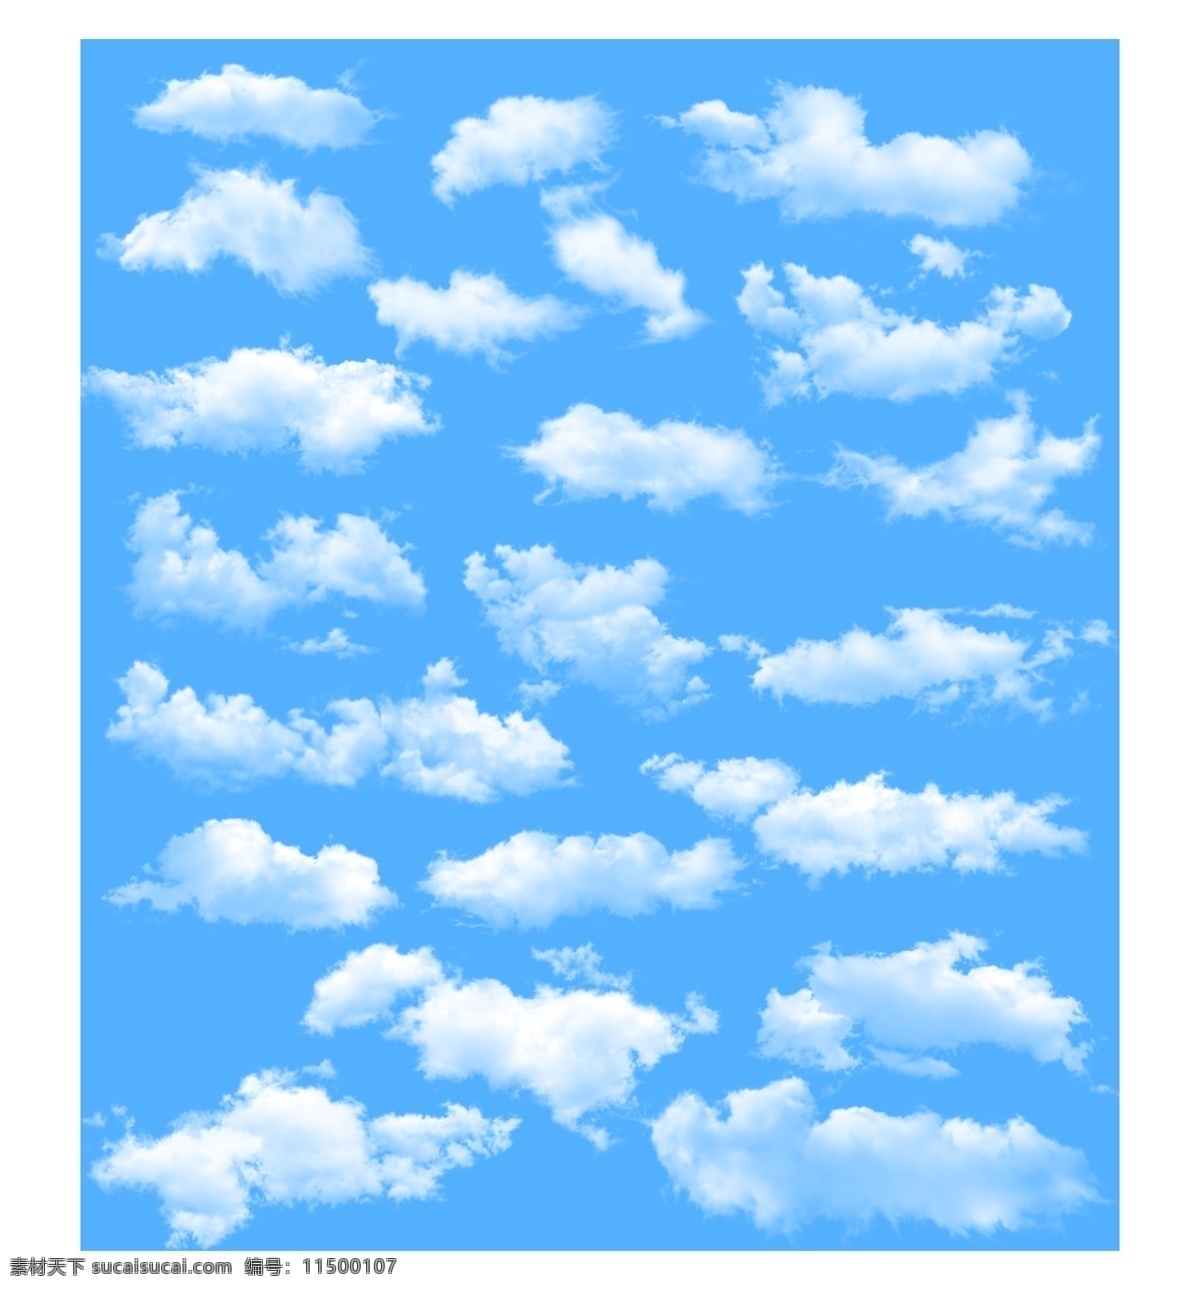 天空白云 蓝天背景 蓝天云朵 白云朵朵 云彩 彩云 蓝天彩云 蓝天云彩 白云背景 高清白云 天空 蓝色的天空 天空云彩 天空彩云 天空云朵 底纹边框 其他素材